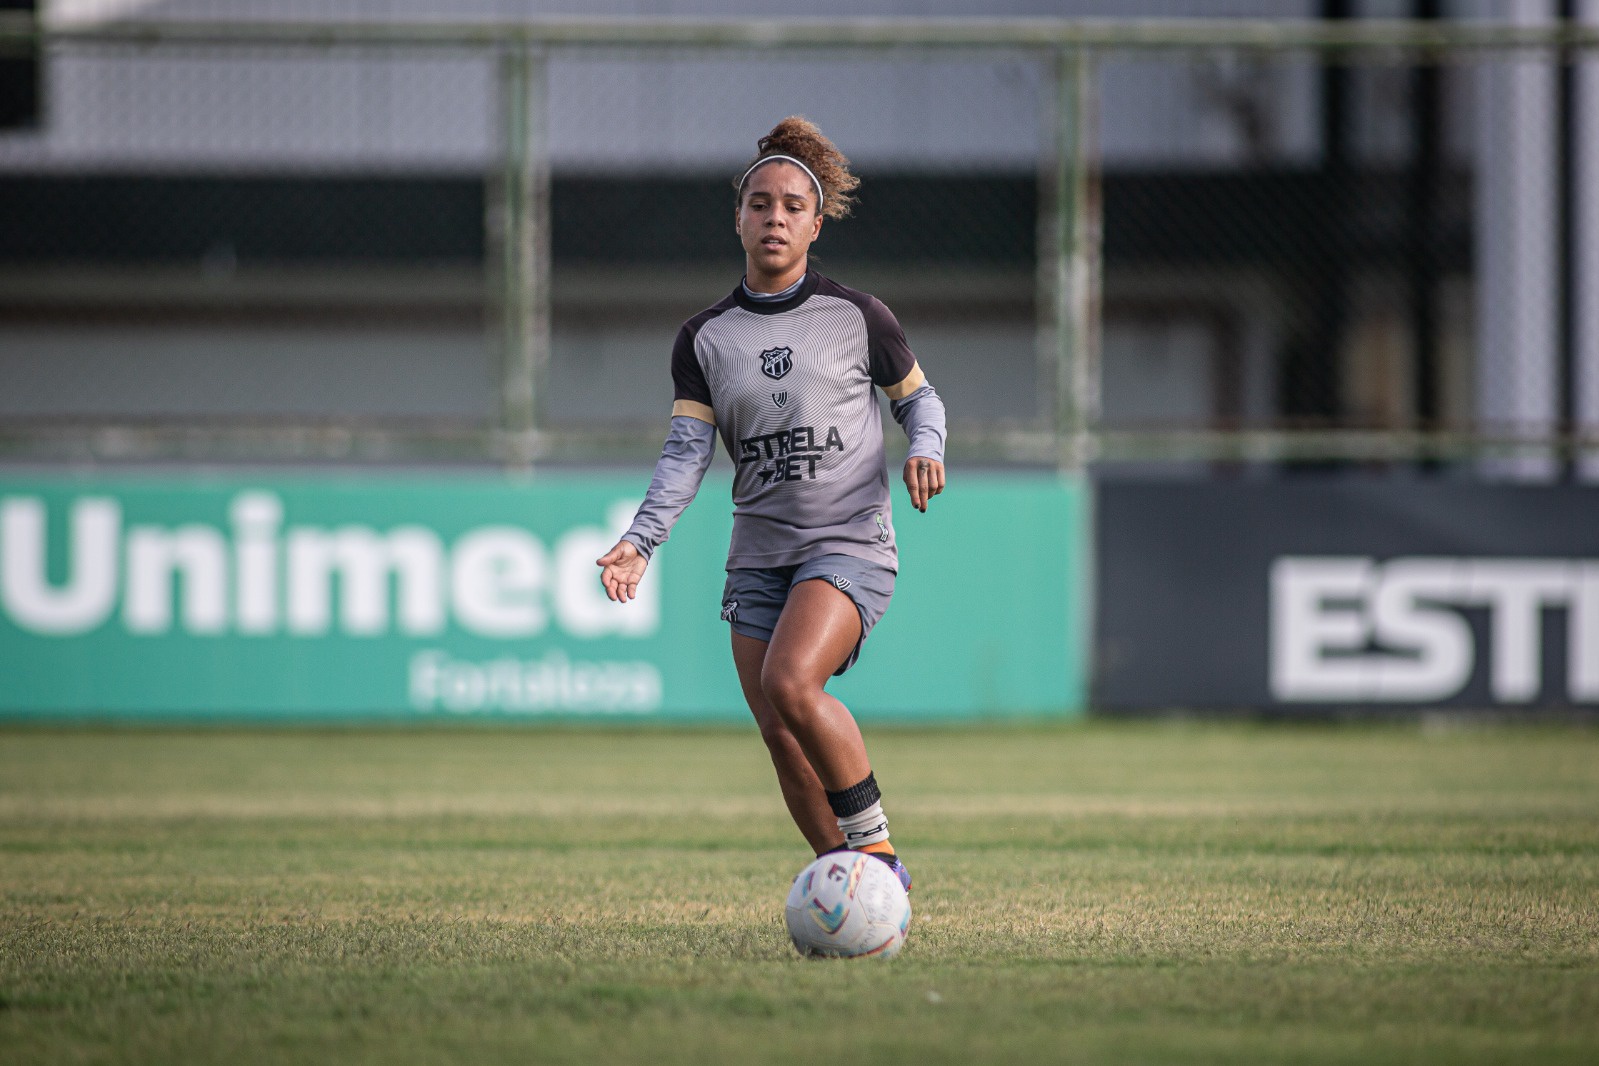 Fut. Feminino: Malu comenta a expectativa em fazer uma grande partida na final do Campeonato Cearense